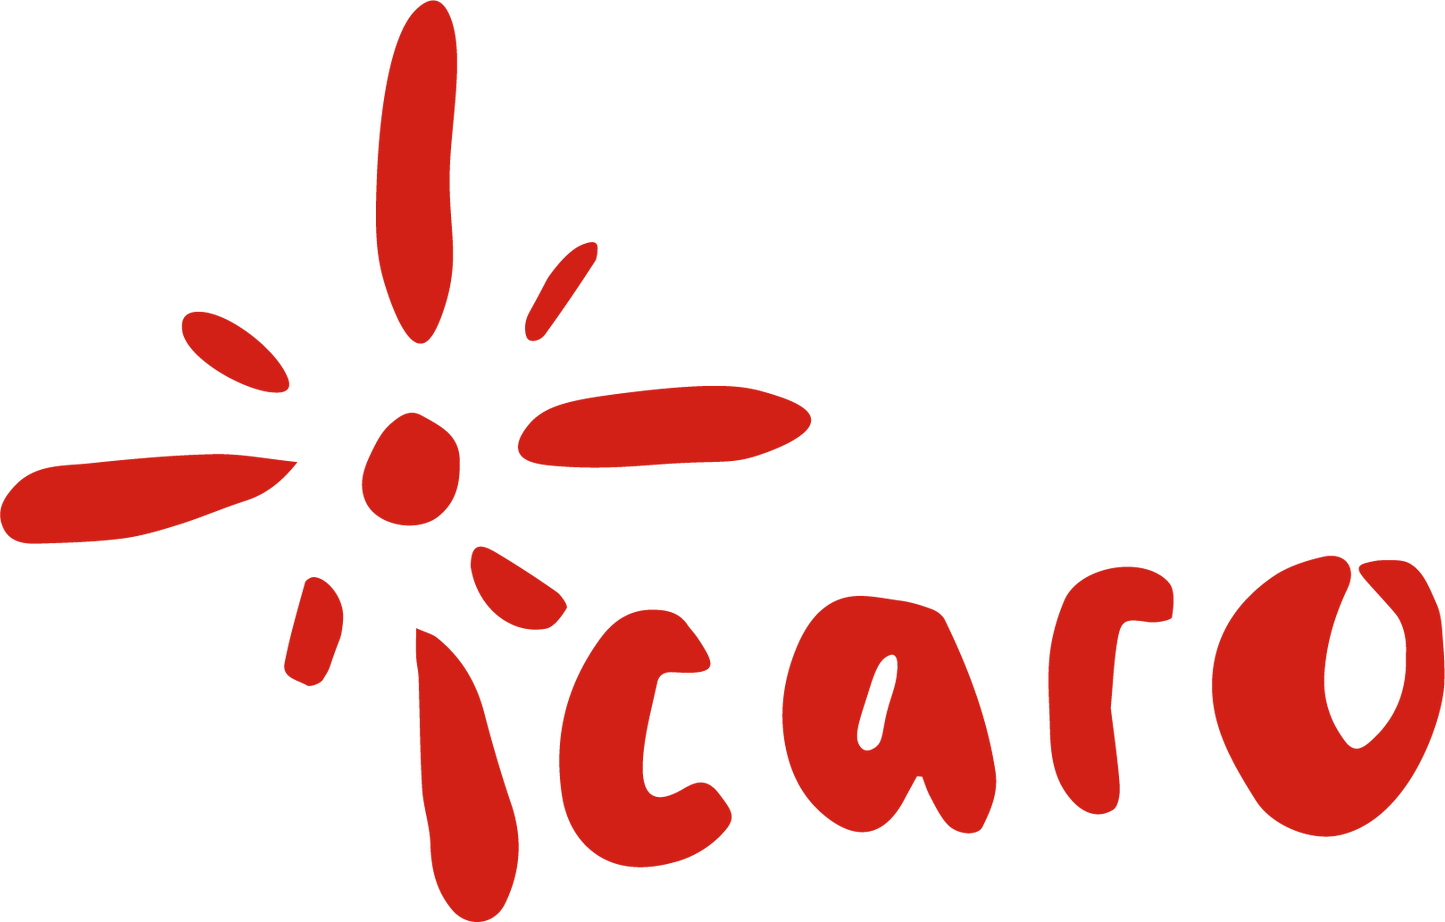 Icaro logo red